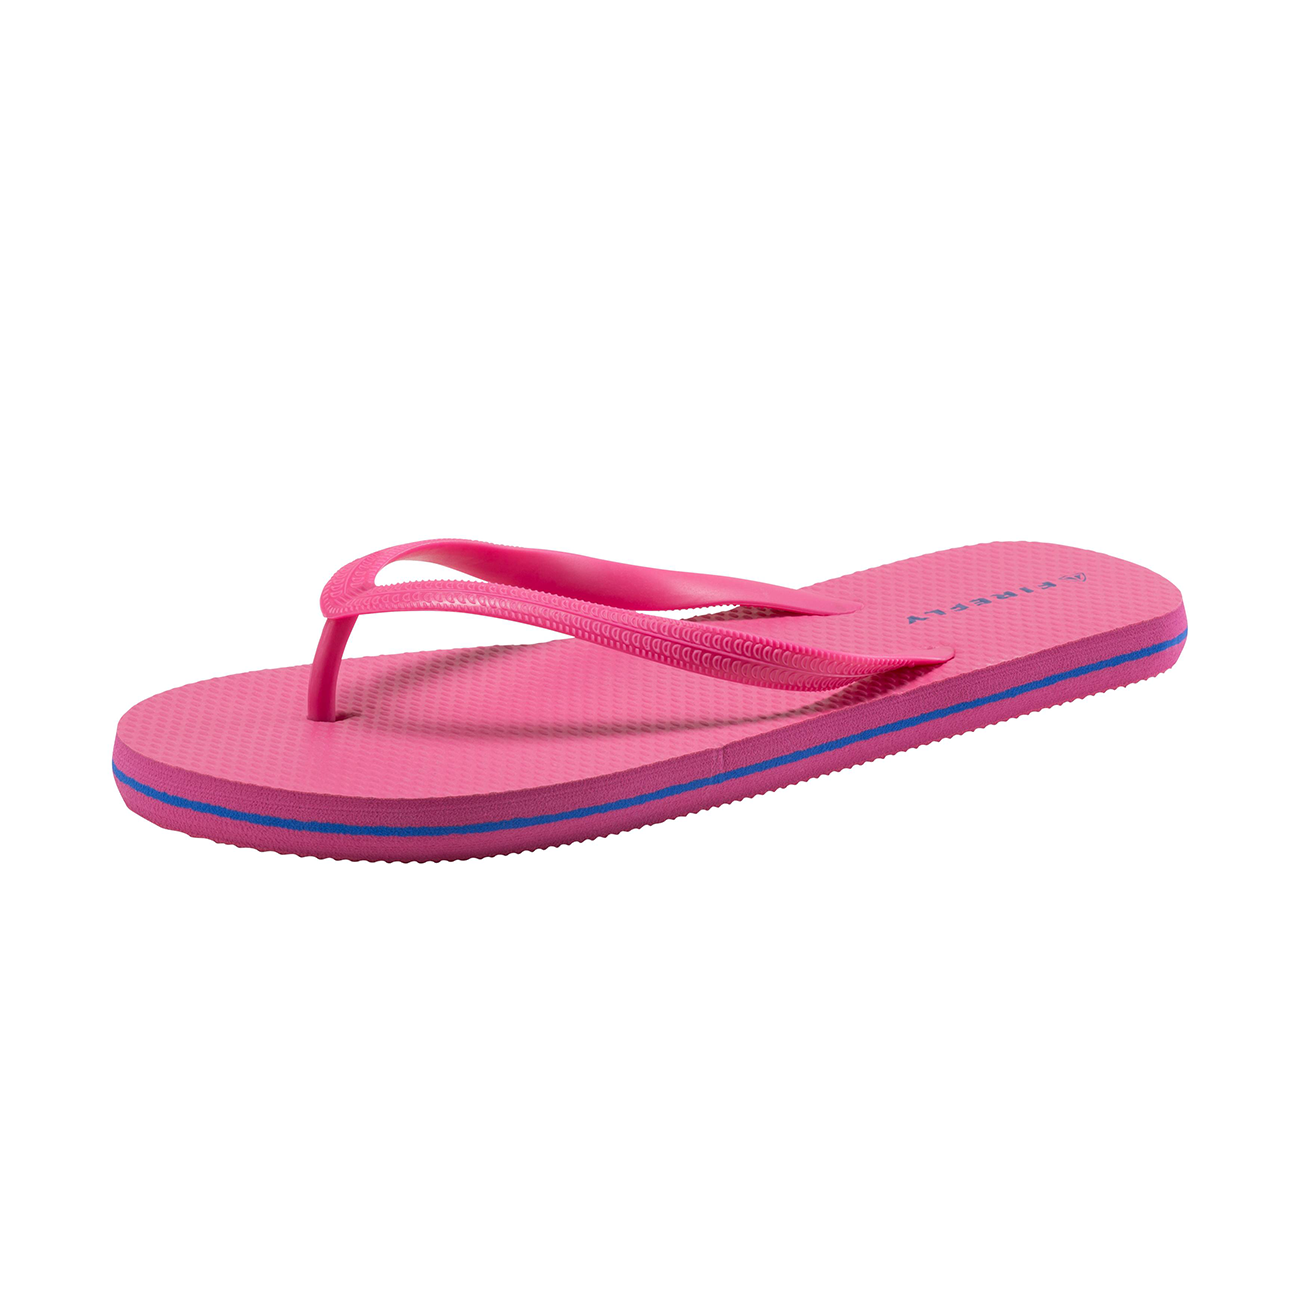 Firefly Madera Flip-Flops For Women, Pink